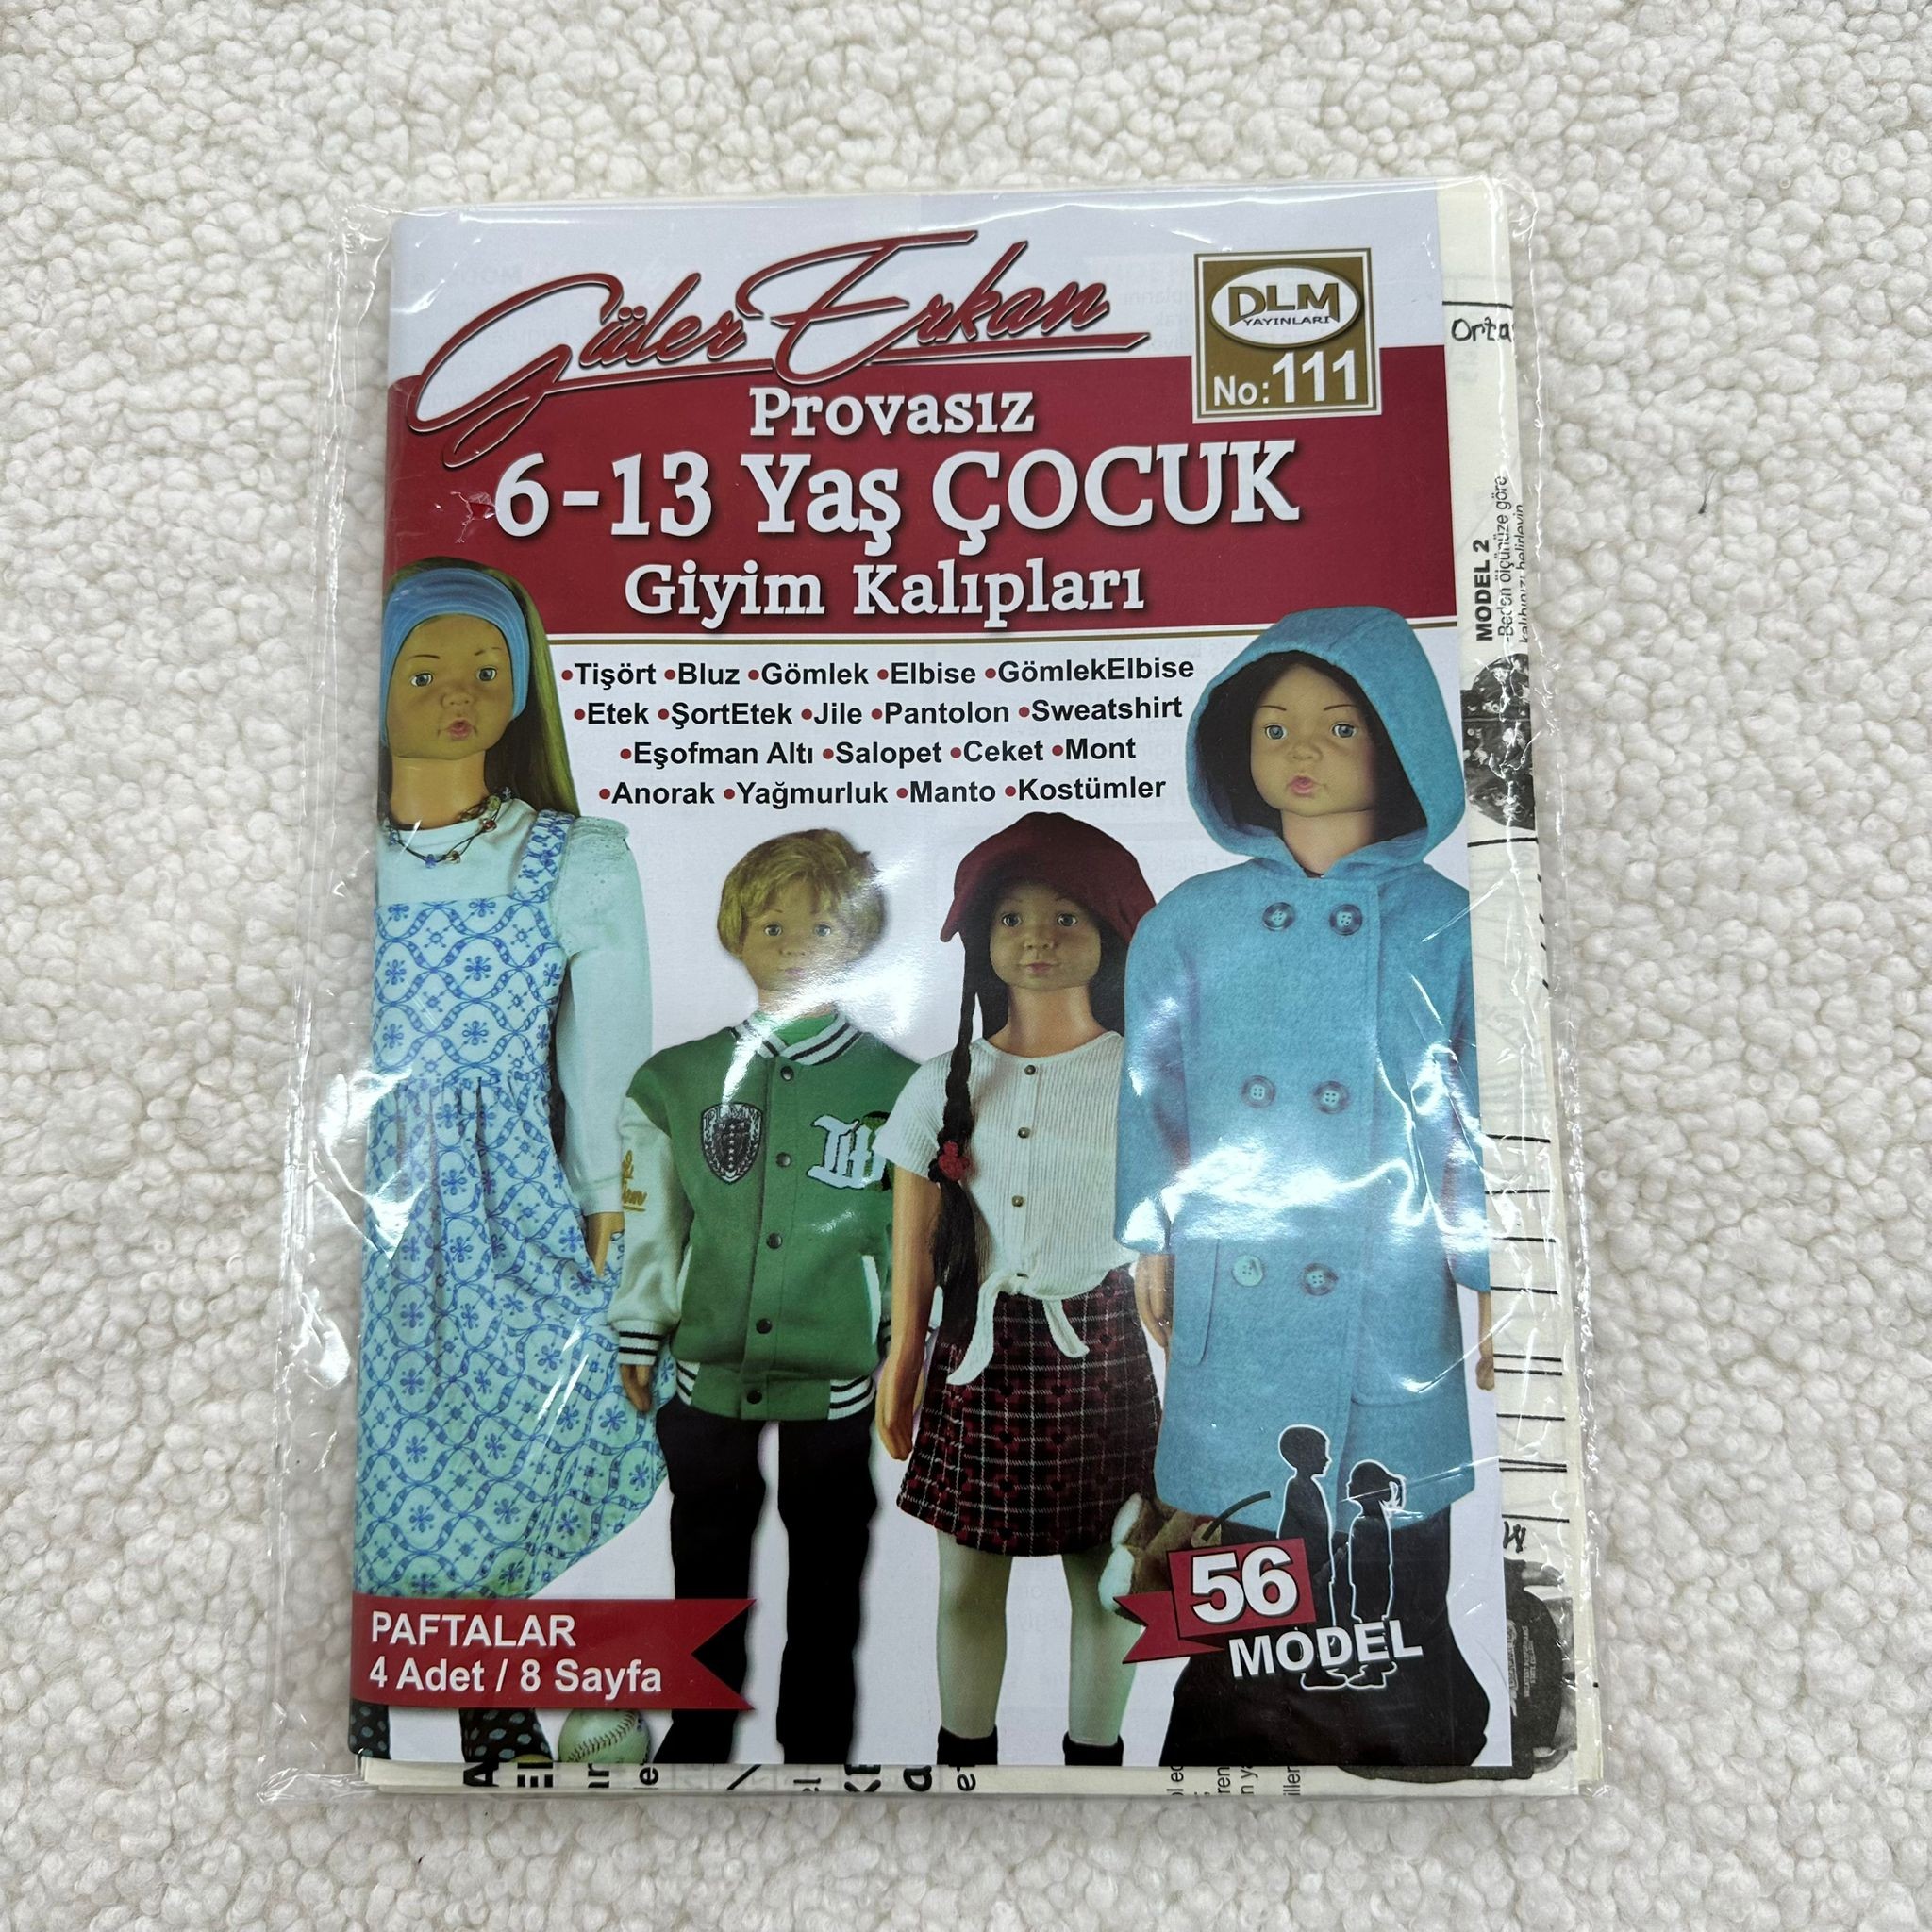 Güler Erkan Çocuk Giyim Kalıpları Dergisi No:111